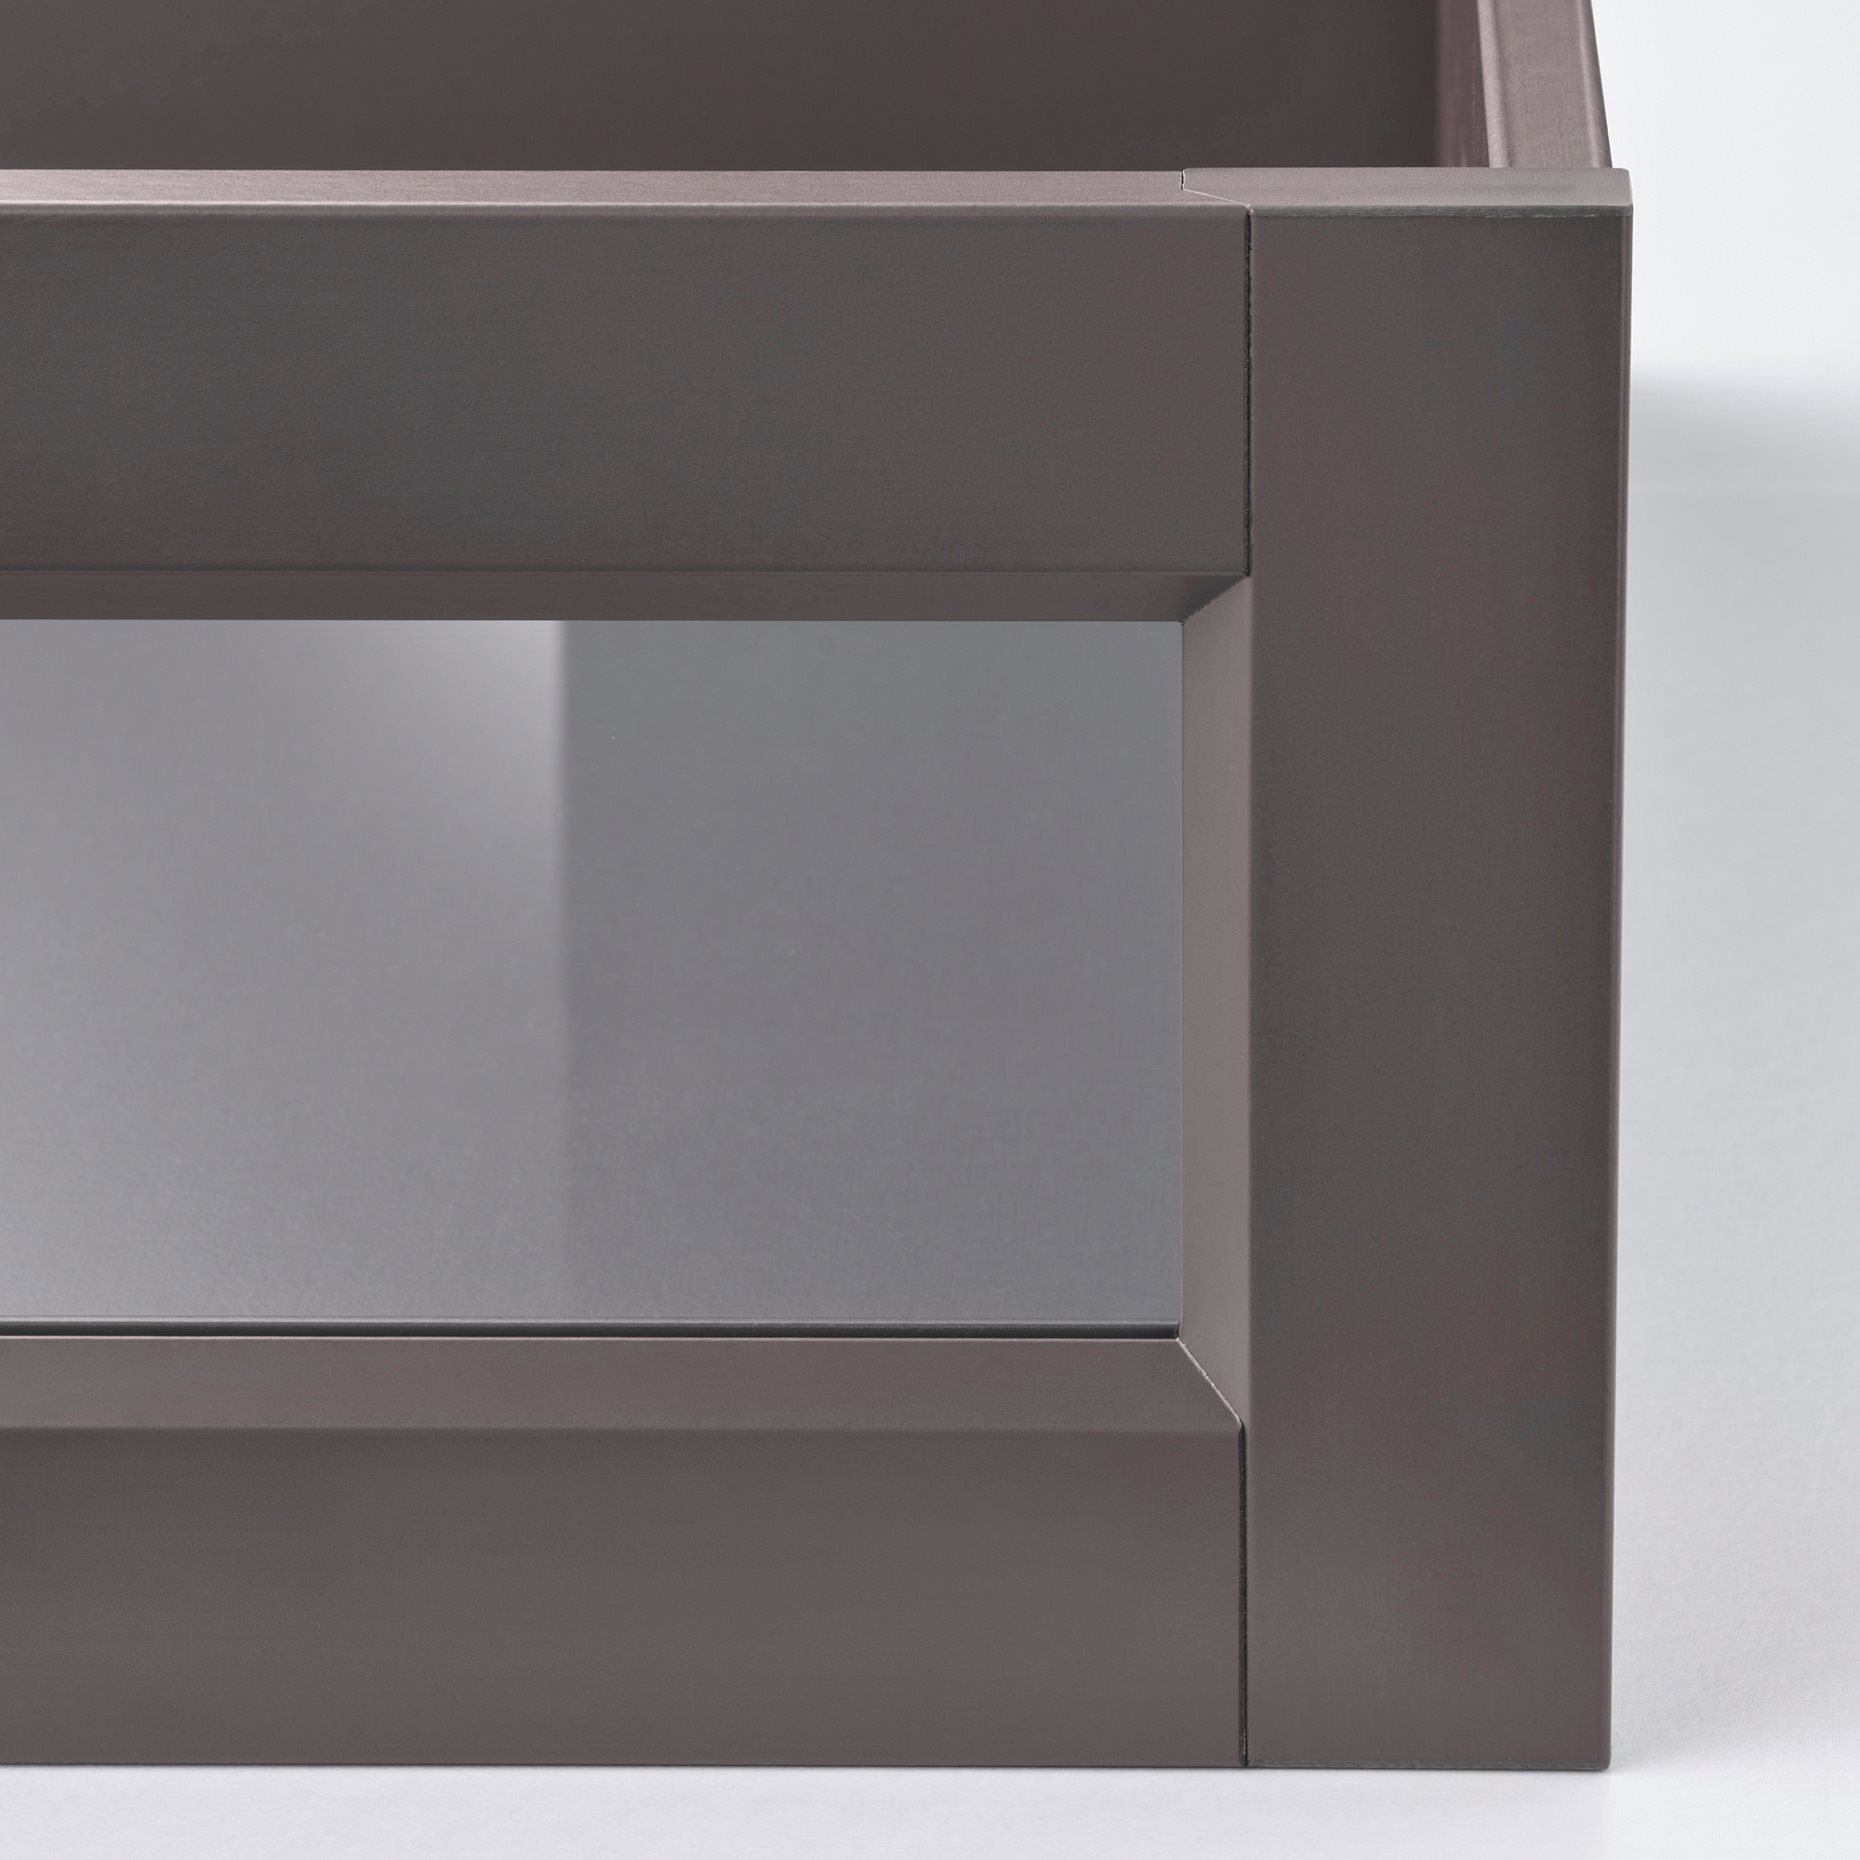 KOMPLEMENT, συρτάρι σε πλαίσιο με γυάλινη πρόσοψη, 75x58 cm, 905.096.64